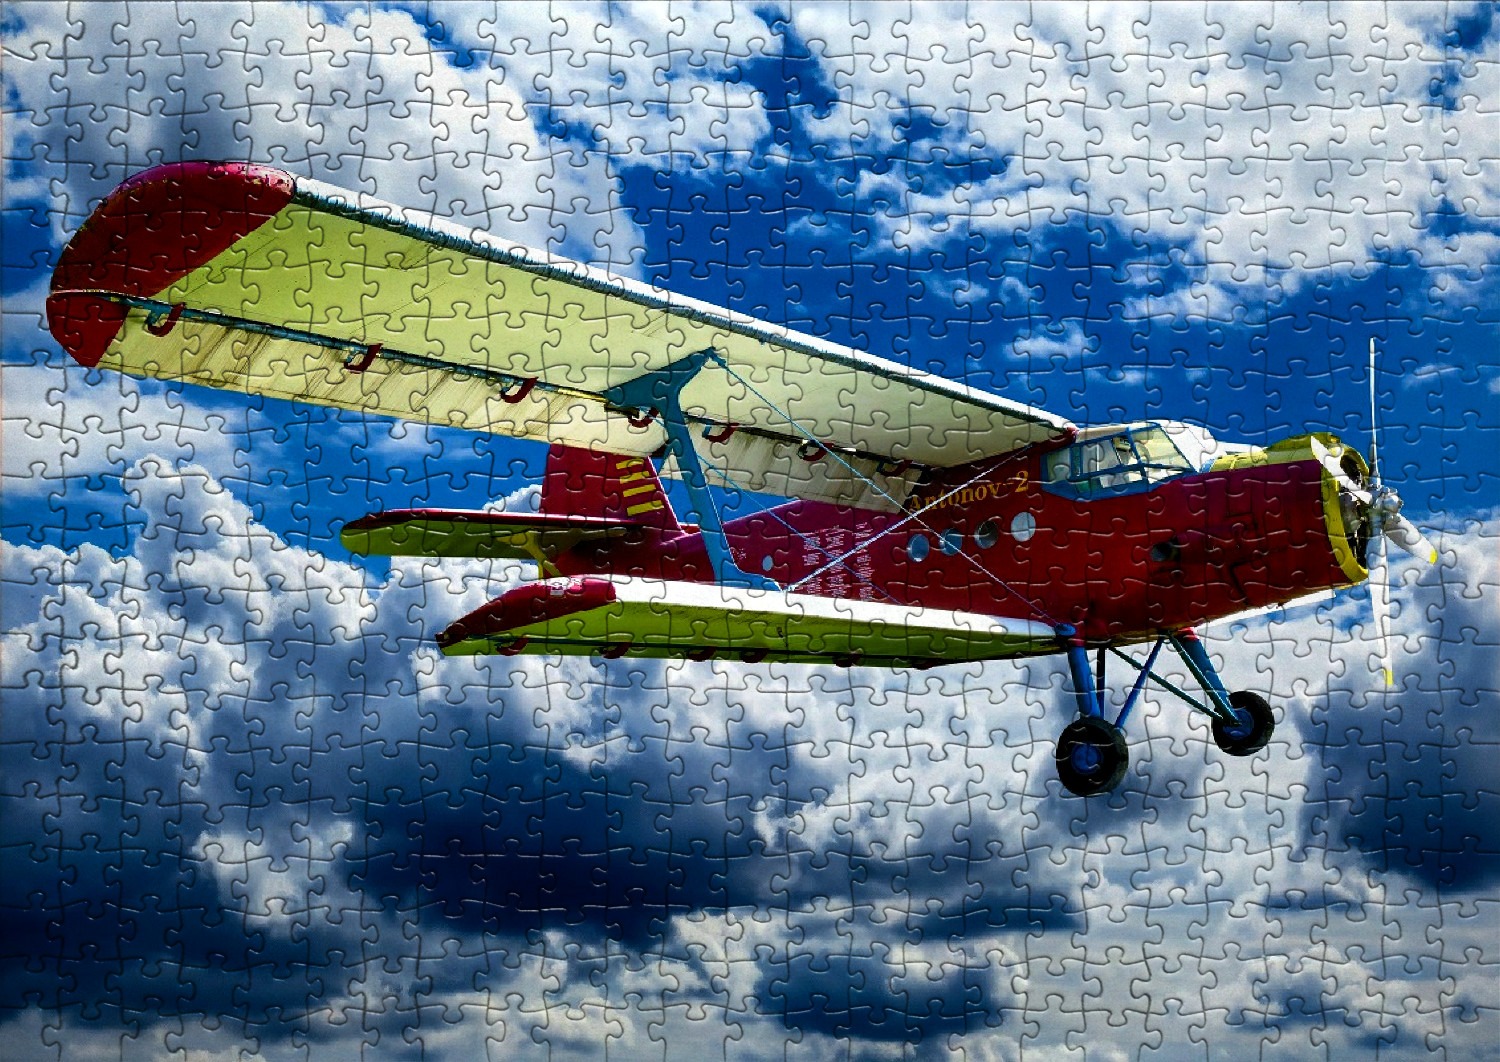 Les avions - Liste de 28 puzzles